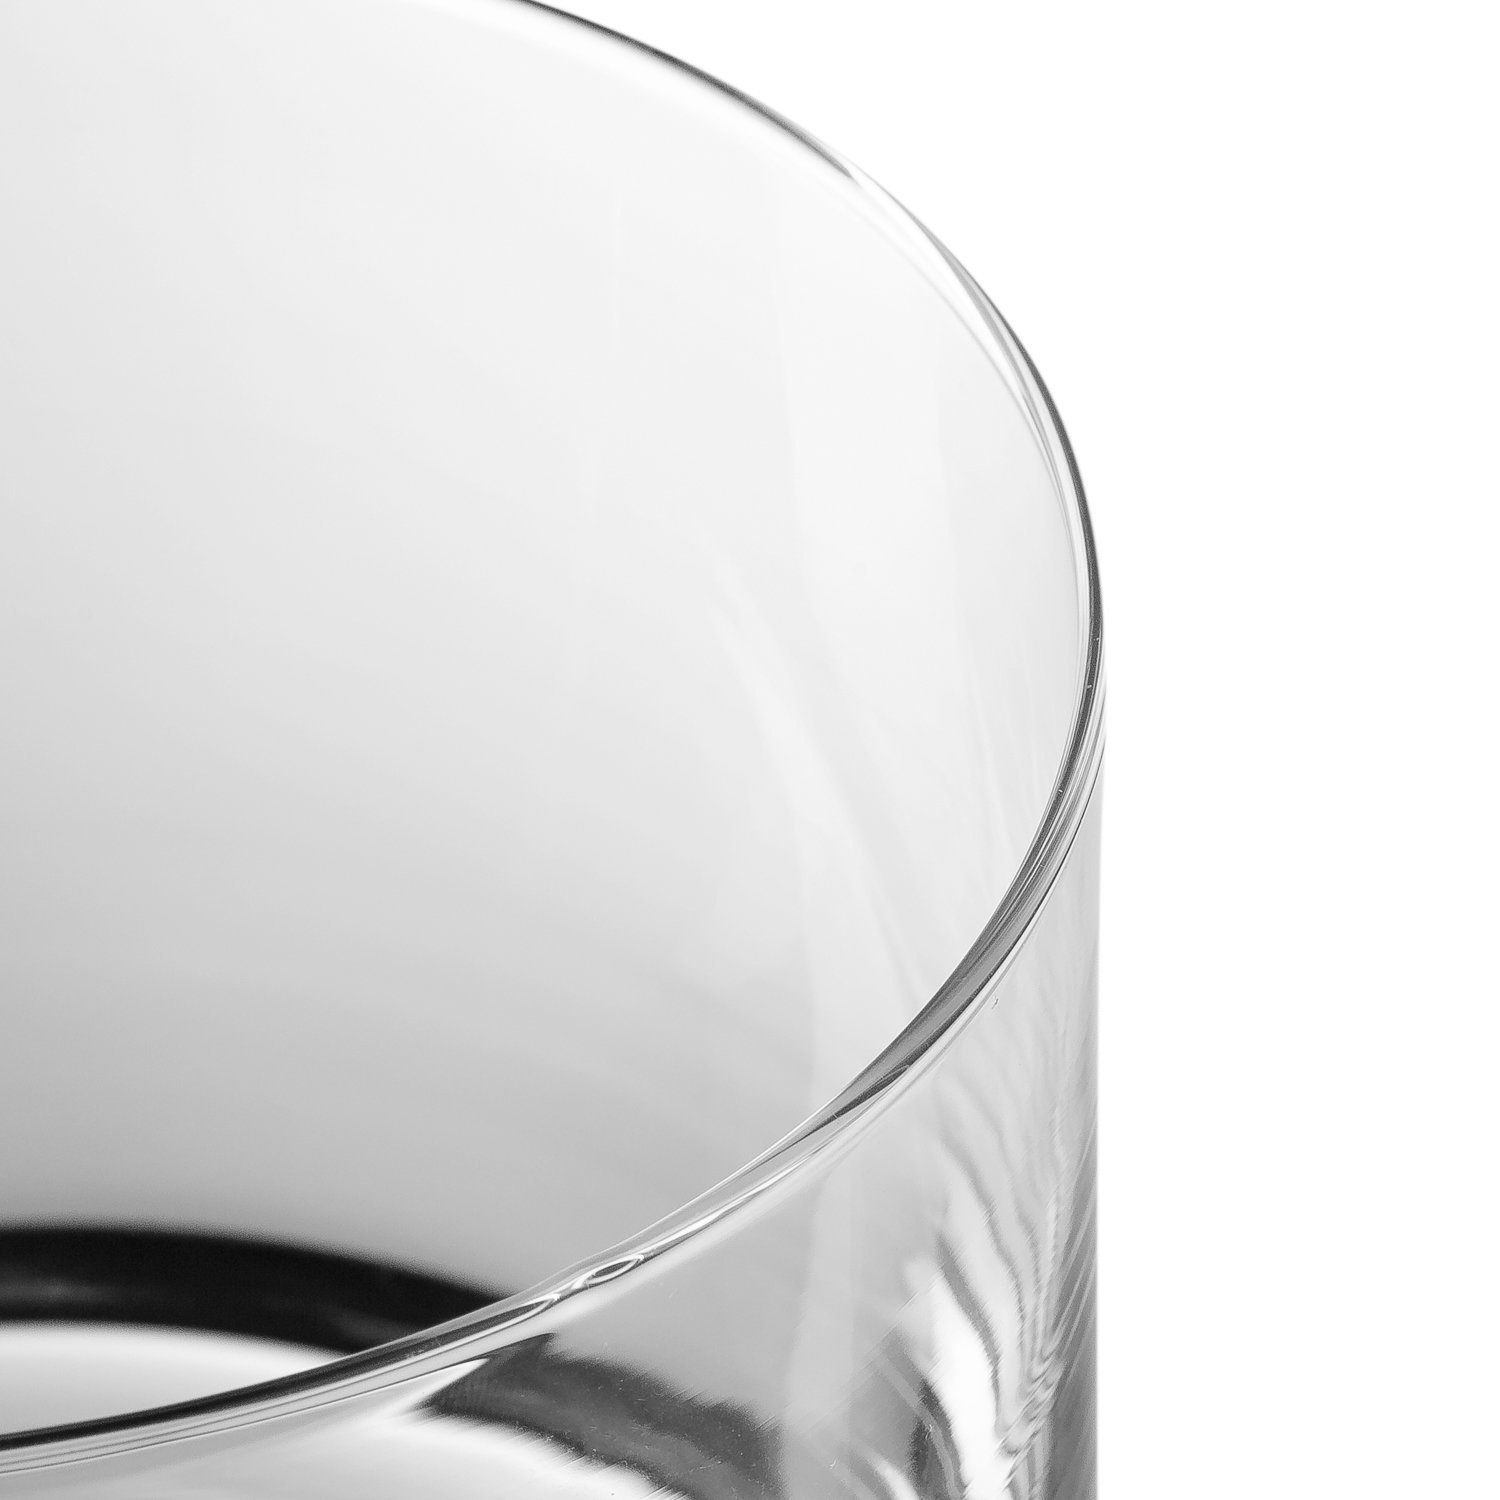 mit & a - - luftdichtem nice für Handgefertigte Deckel Glasdose Glas, Have Freunde Gravur Day GRAVURZEILE mit Deckel, Partner, Familie mit Keksdose